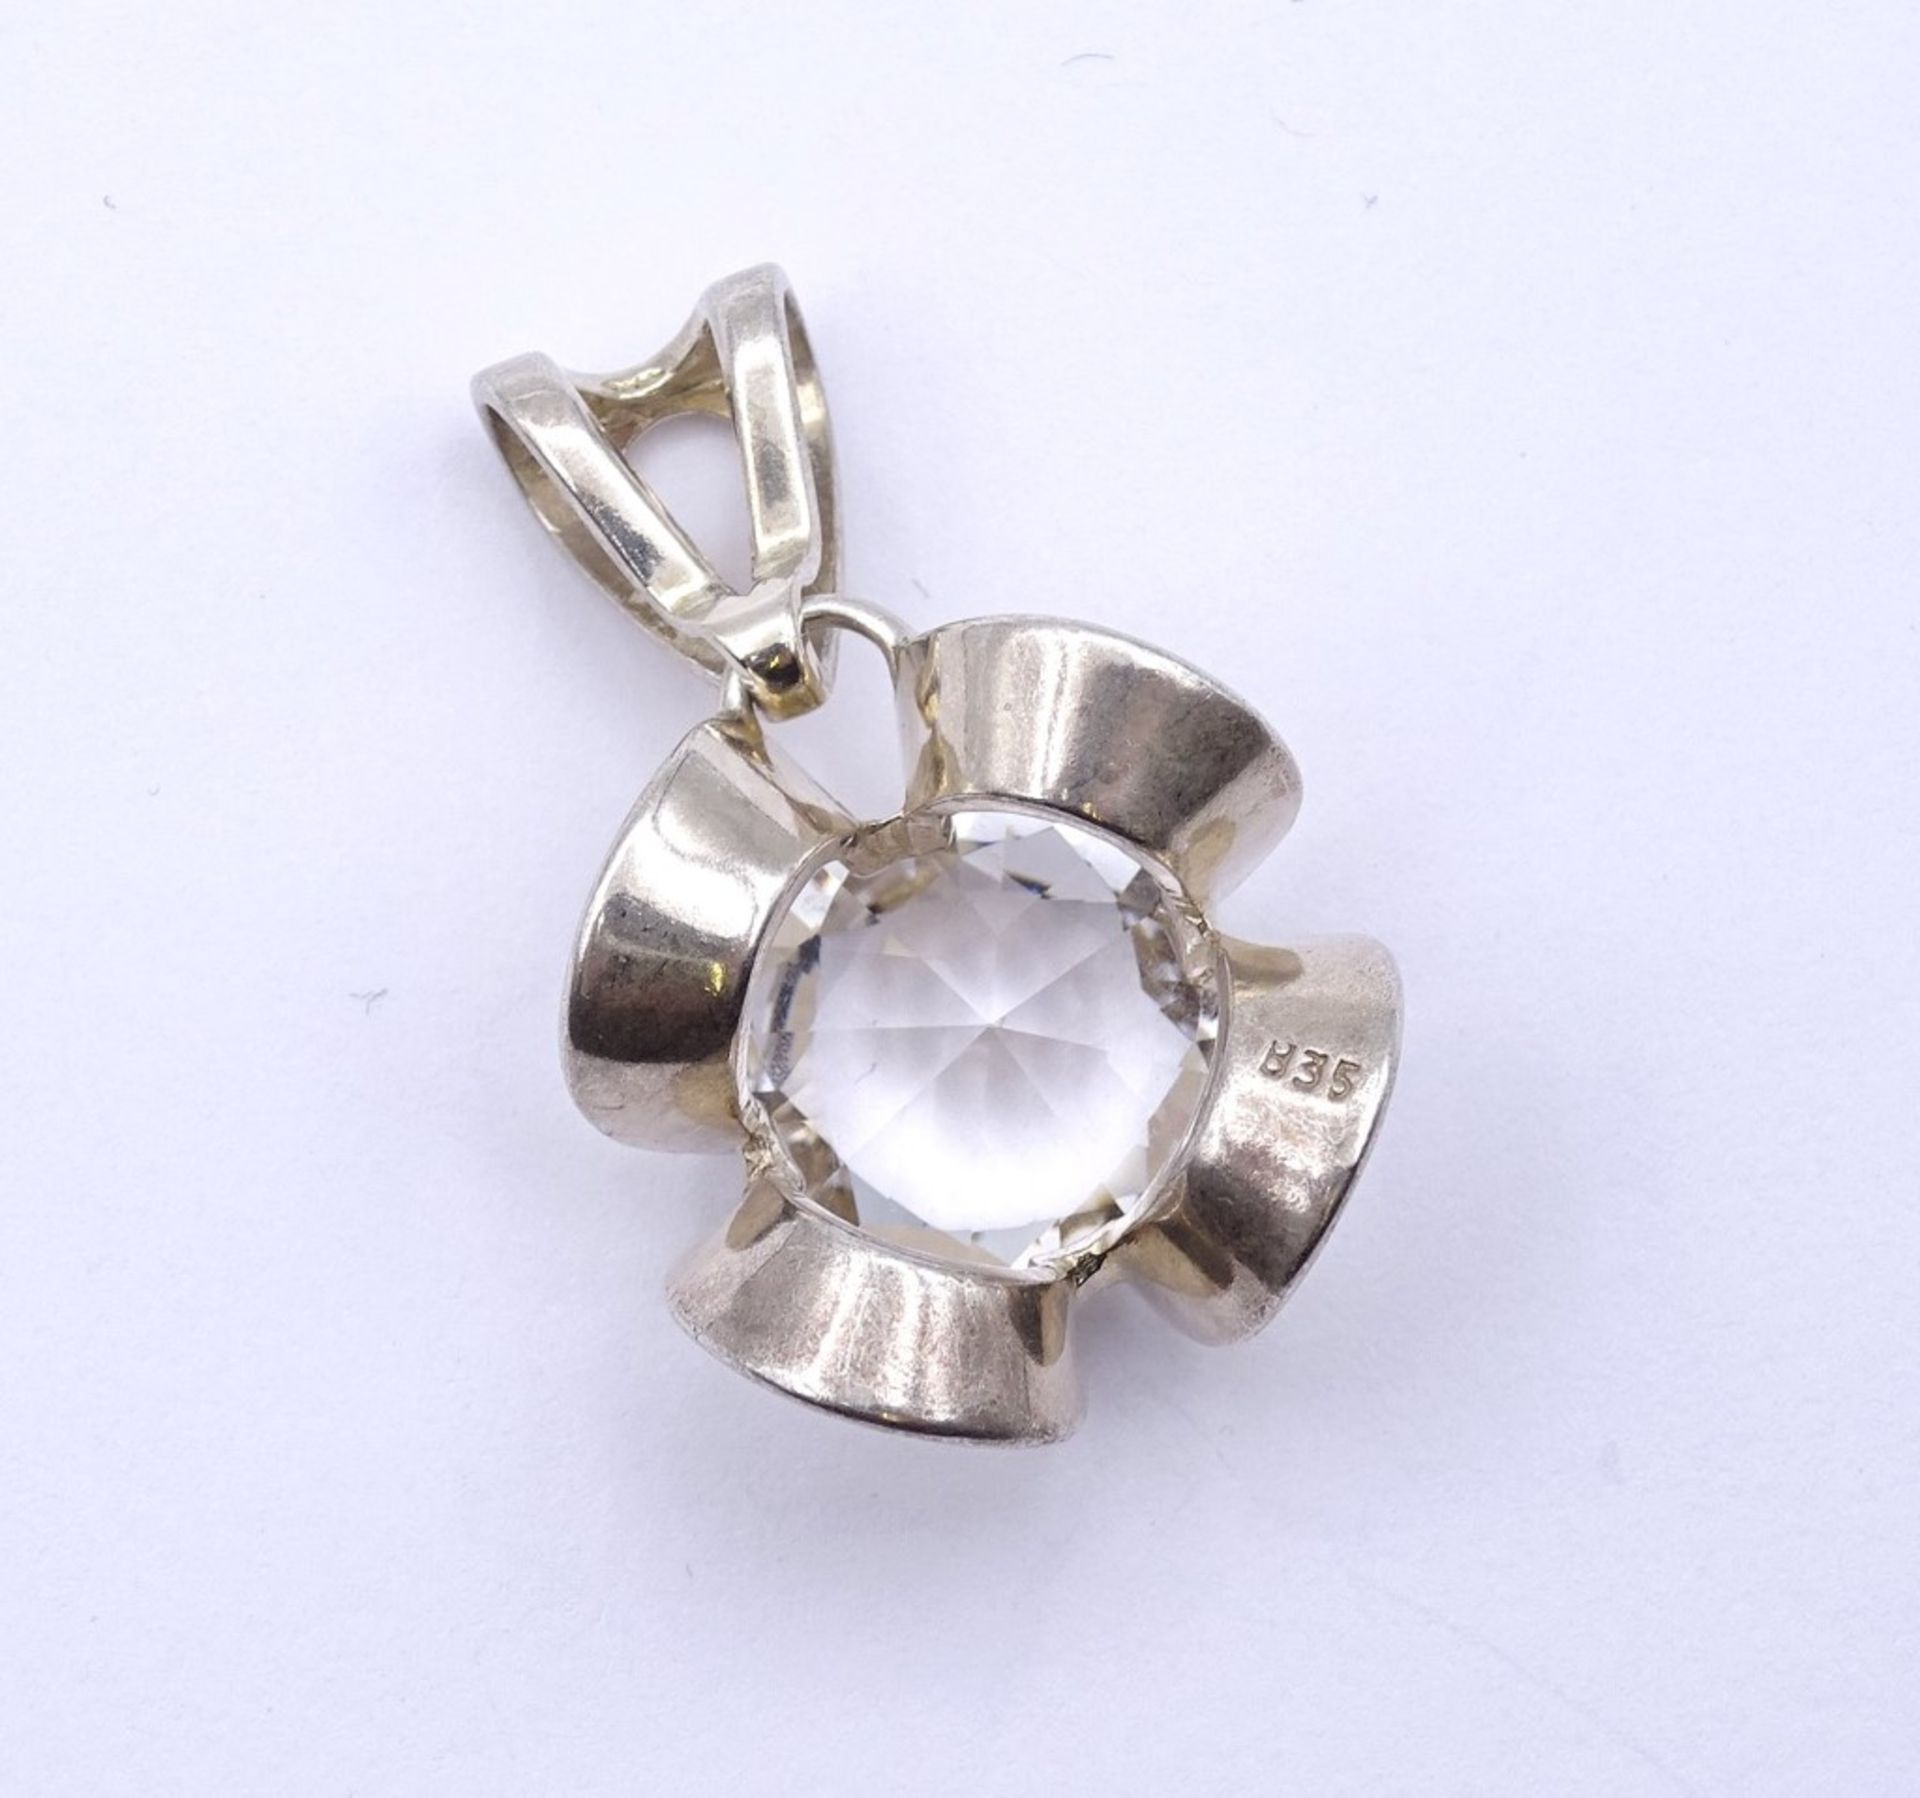 Silber Anhänger mit einen runden klaren Stein (kein Bergkristall), Silber 0.835, L- 3,3cm, 6,2g. - Bild 3 aus 3